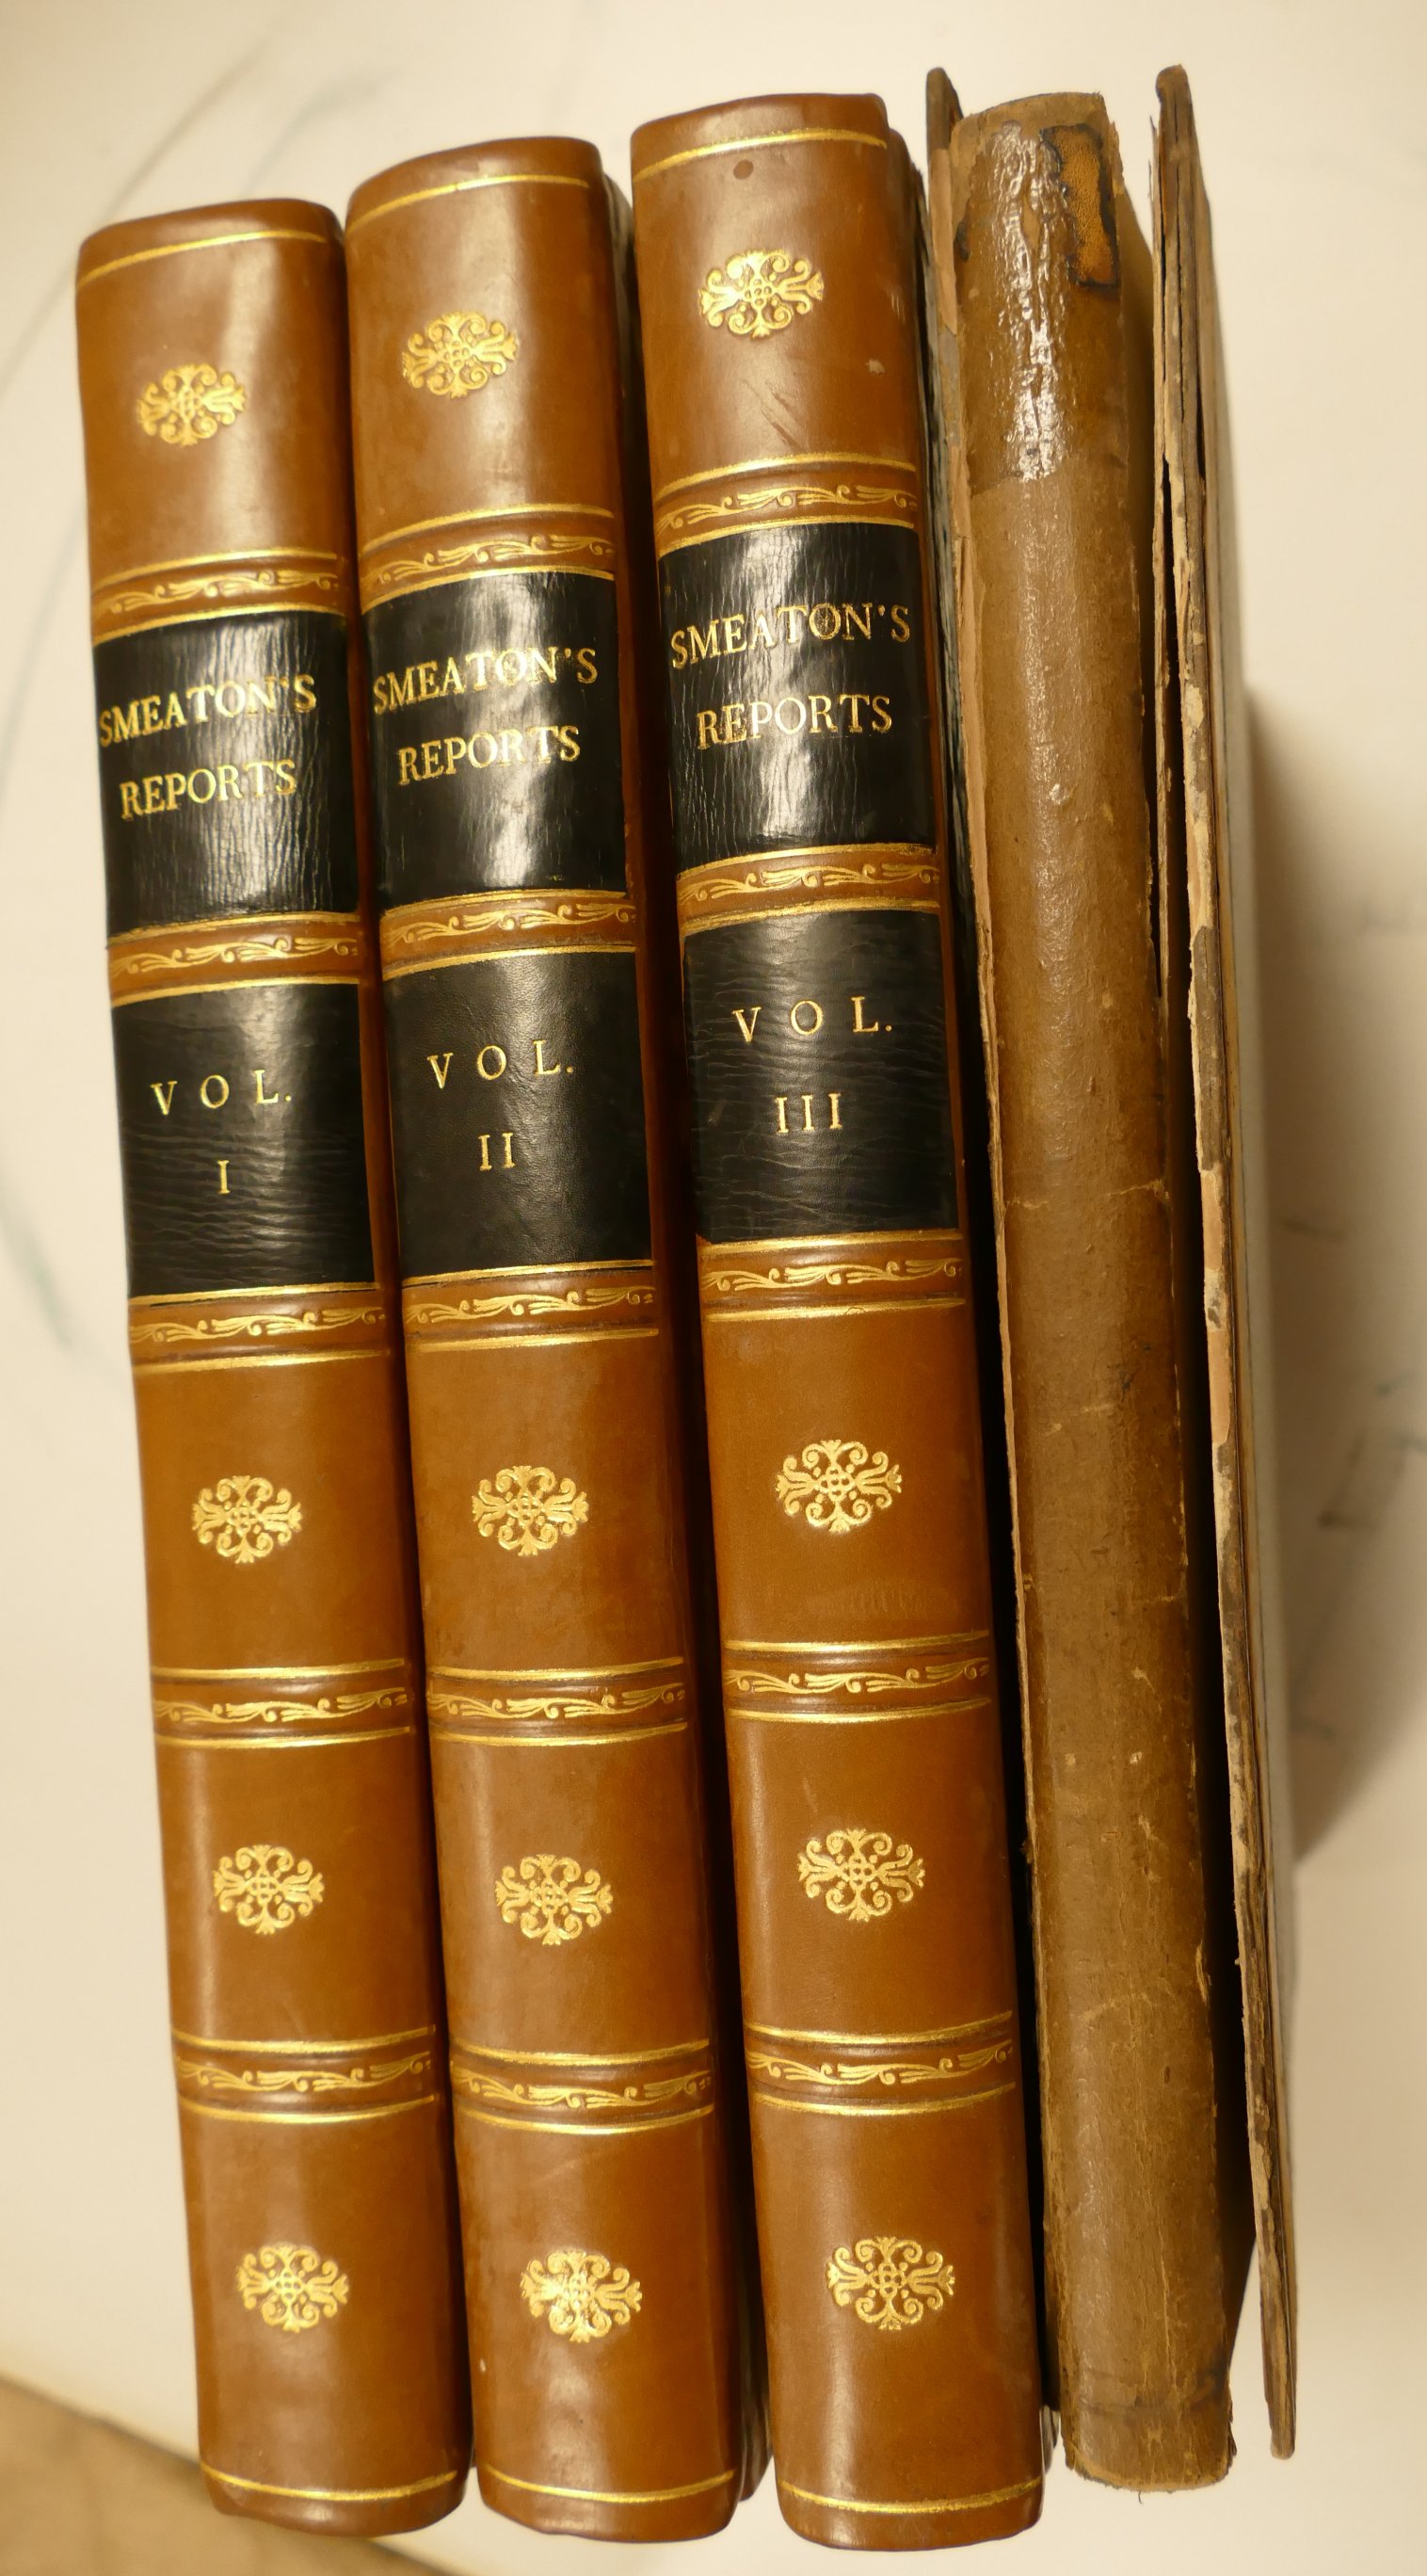 SMEATON, John, Reports of the late John Smeaton..., London 1812, 3 vols.